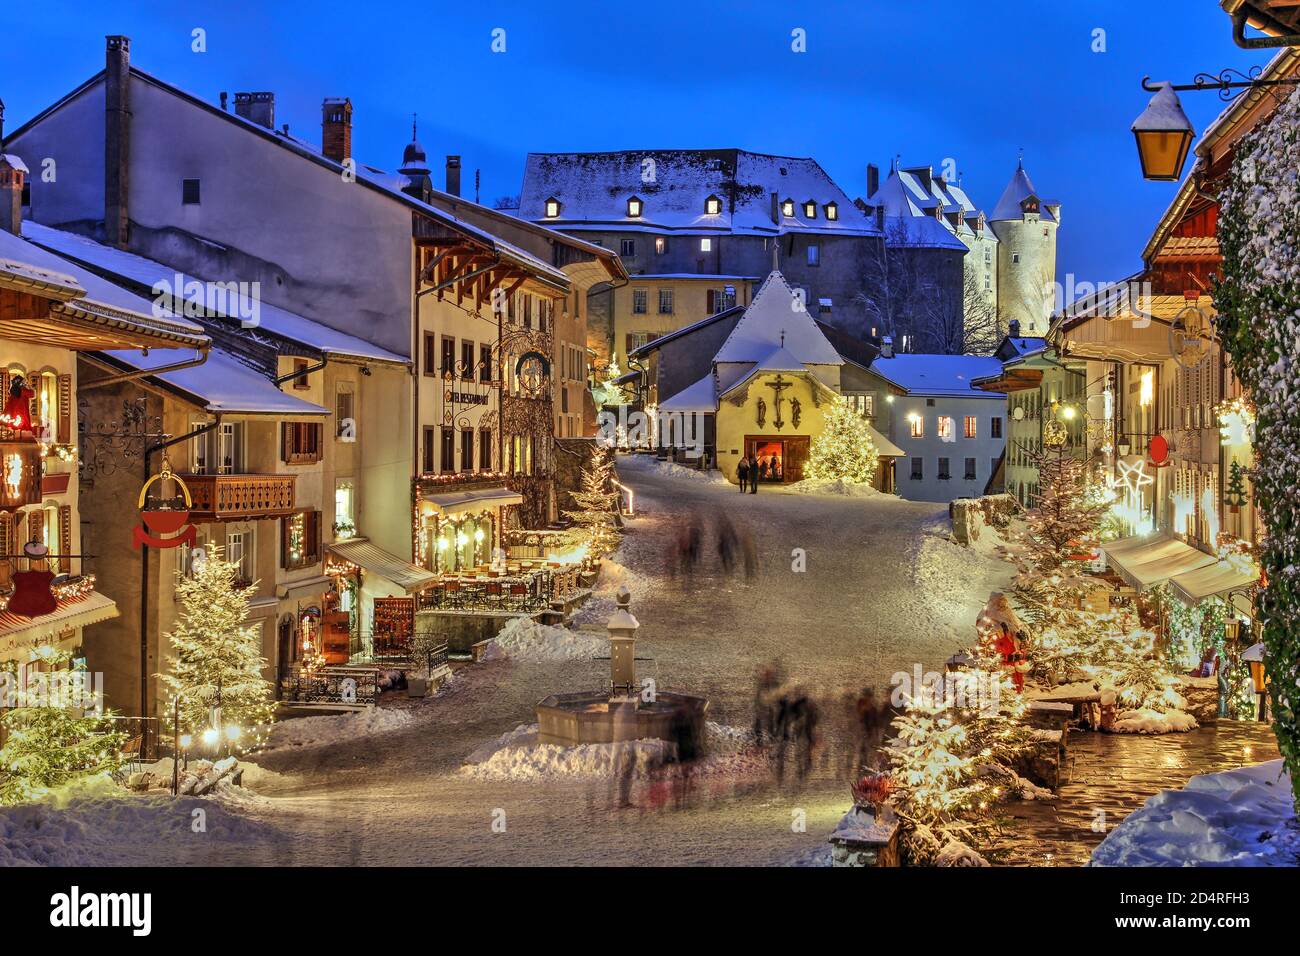 Hiver (Noël) dans la ville médiévale de Gruyères, canton de Fribourg, Suisse. En arrière-plan se profile le Château de Gruyere. Banque D'Images